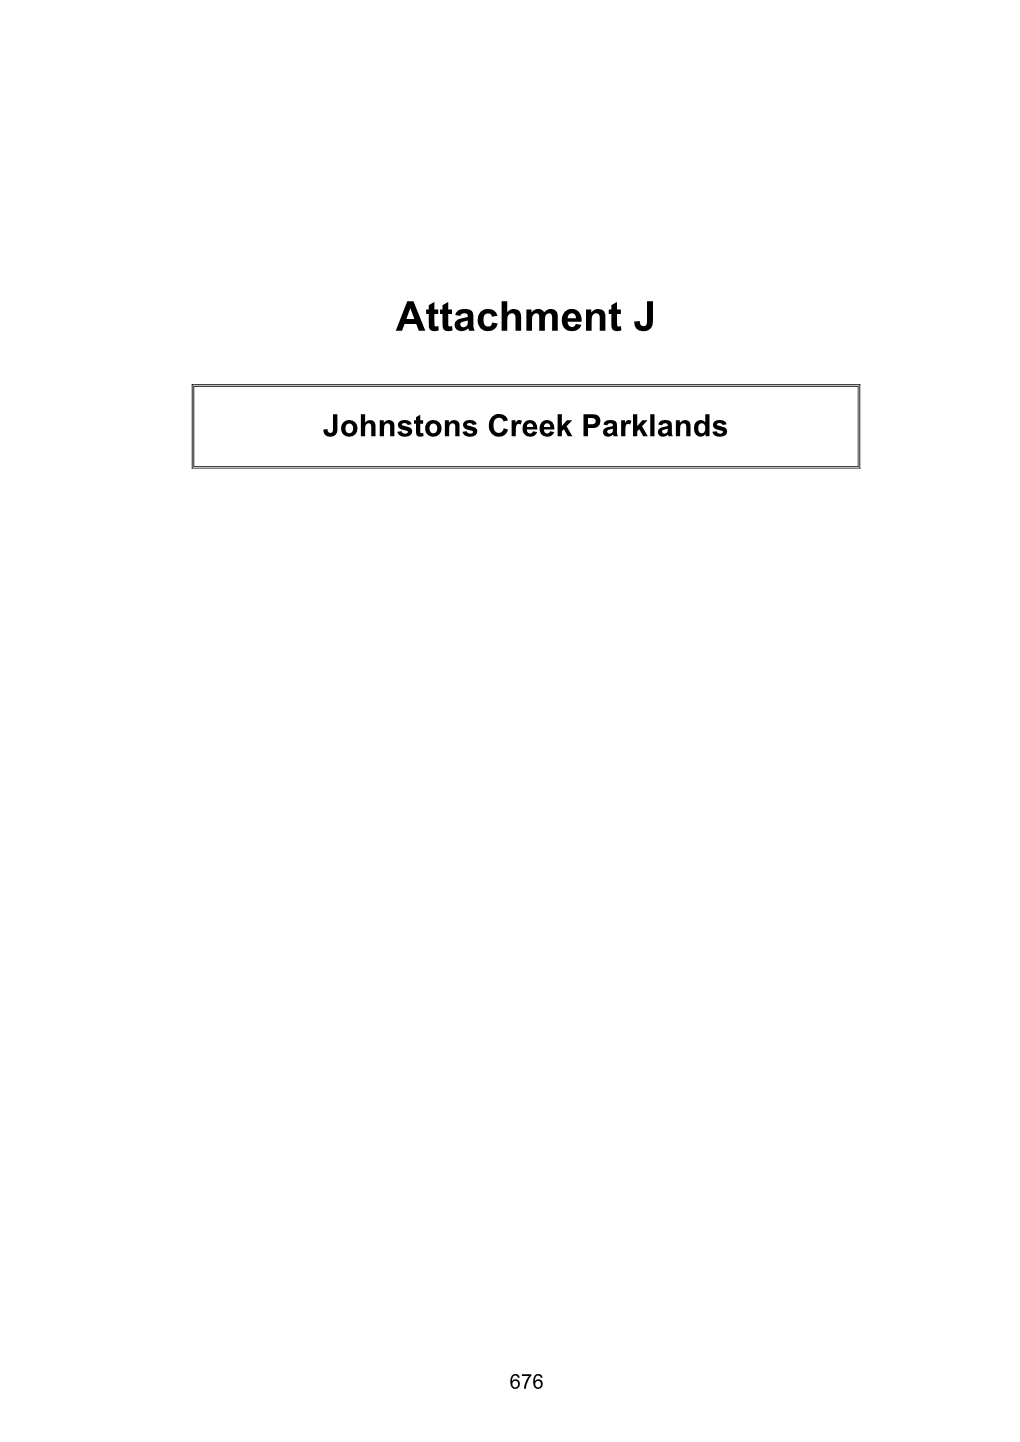 Attachment J Johnstons Creek Parklands